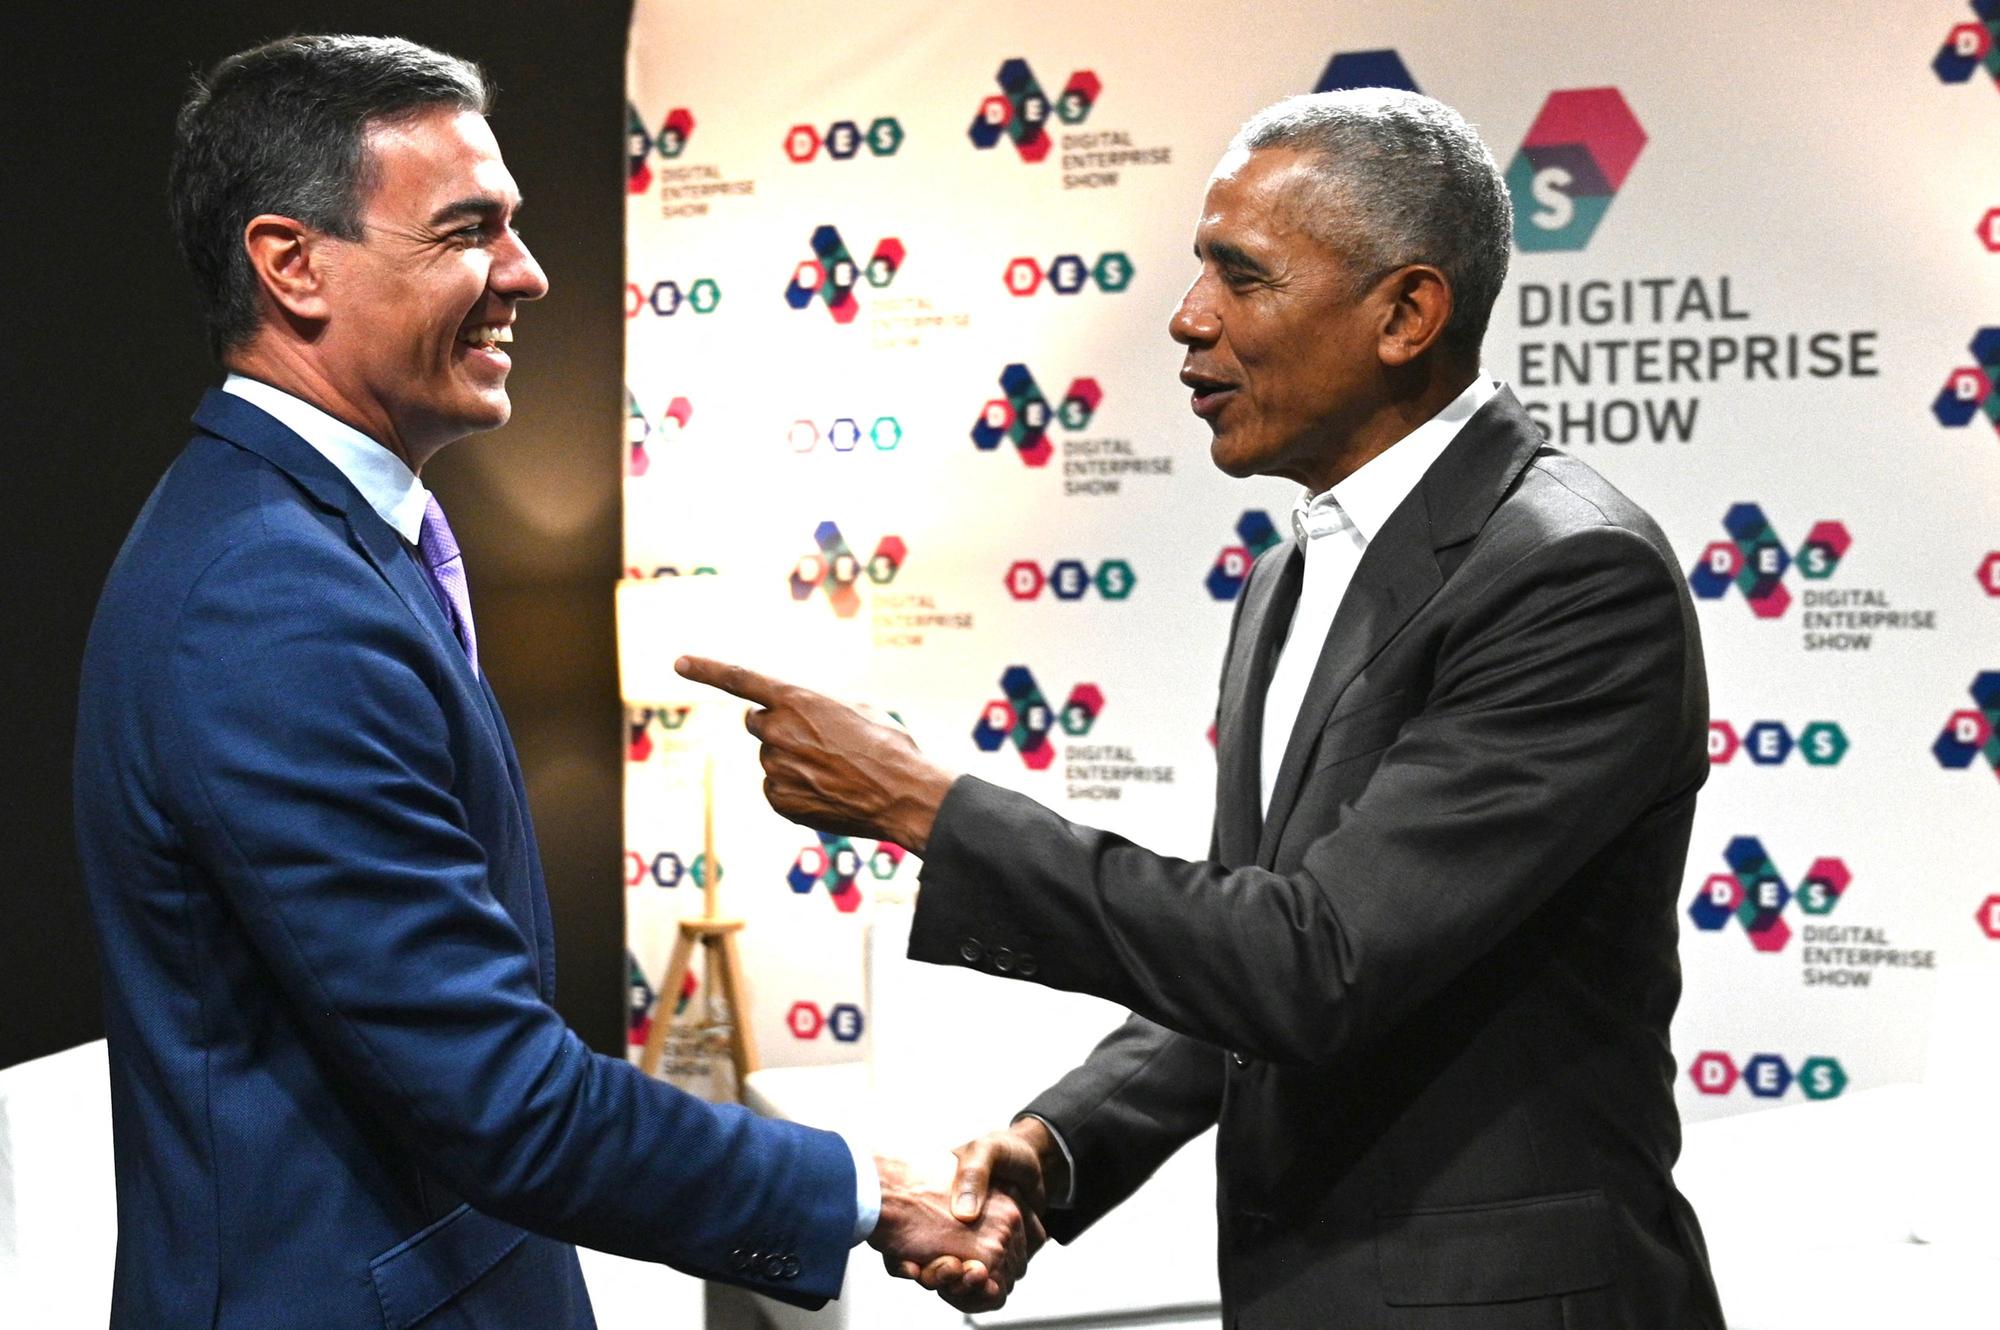 Pedro Sánchez saluda a Barack Obama en el Digital Enterprise Show en Málaga, este martes.